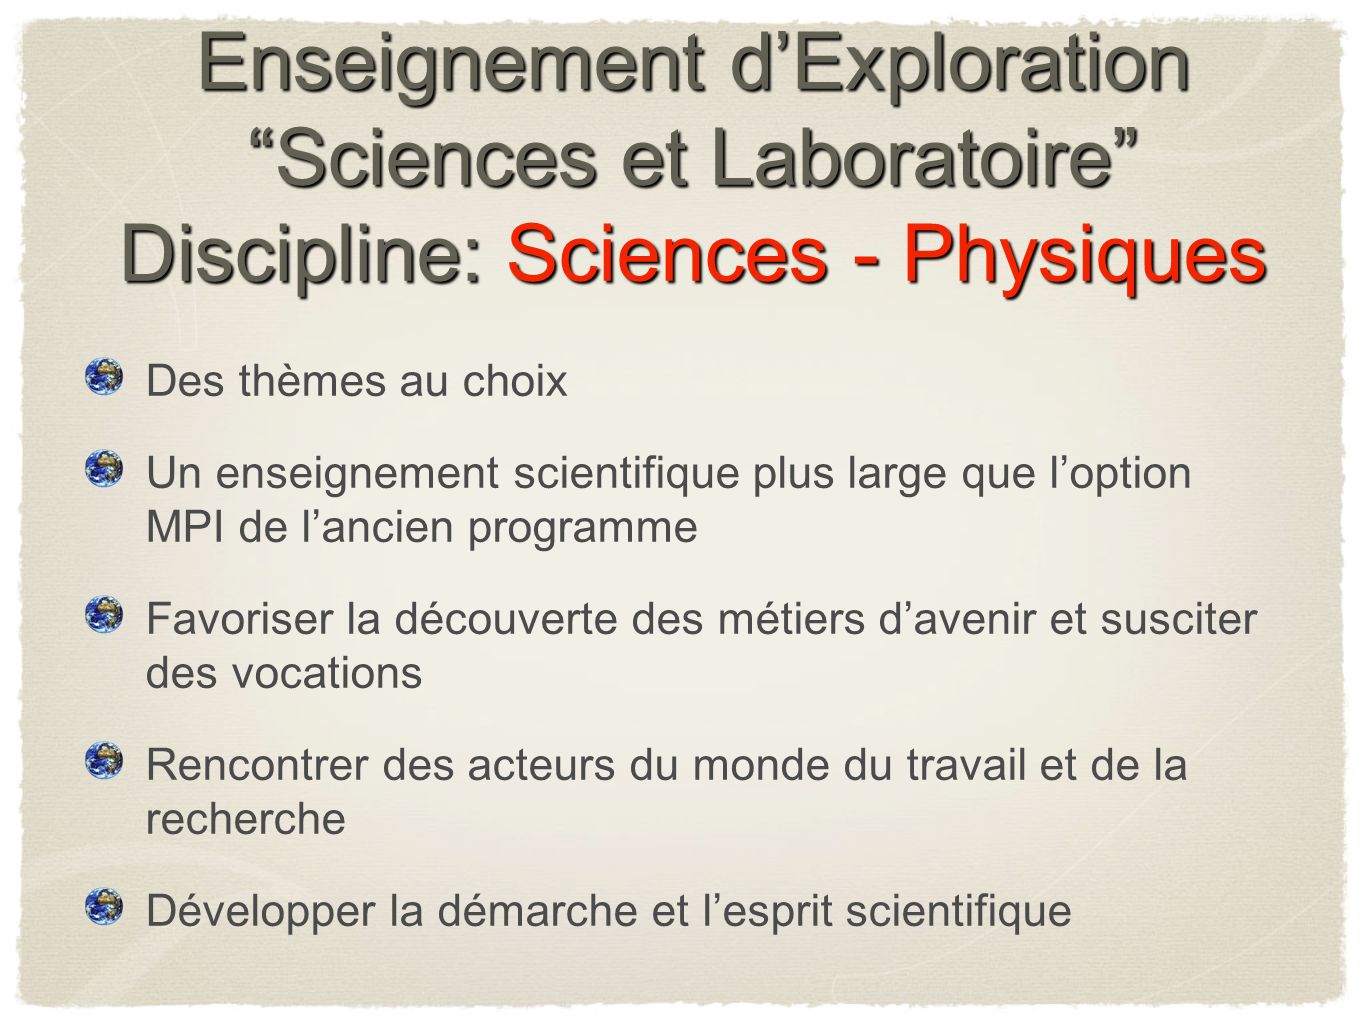 Enseignement d’Exploration Sciences et Laboratoire Discipline: Sciences - Physiques